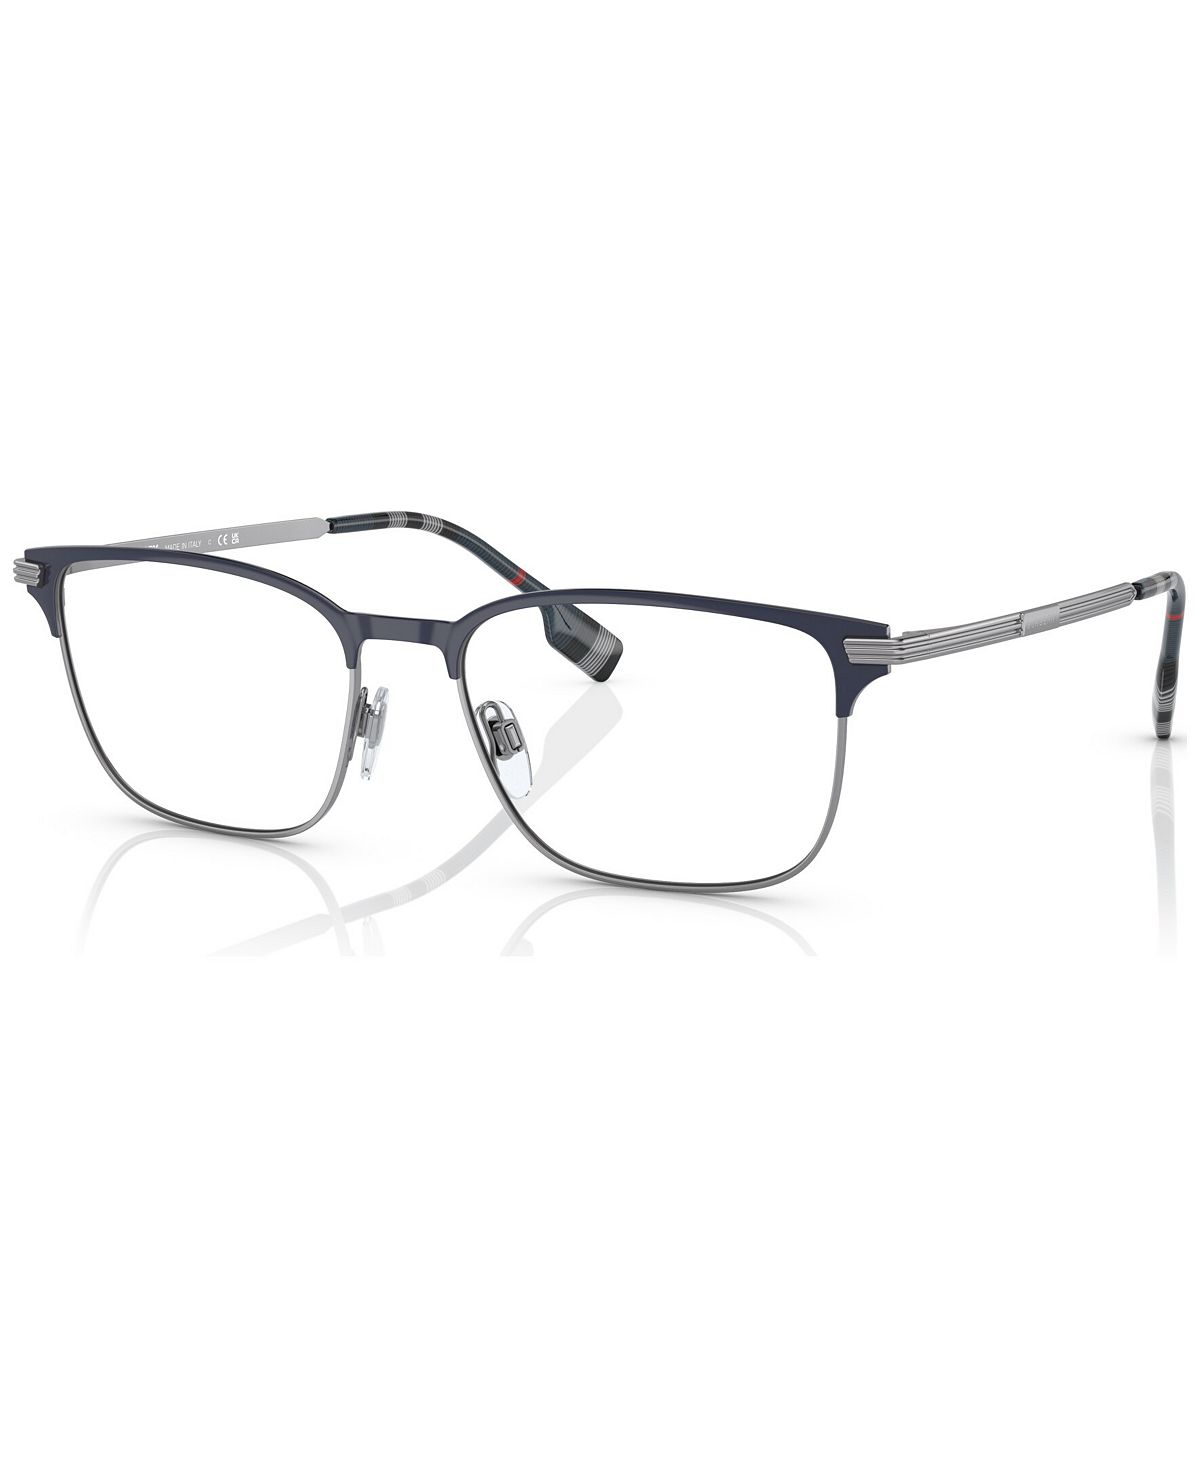 Мужские прямоугольные очки, BE137257-O Burberry мужские прямоугольные очки be236954 o burberry